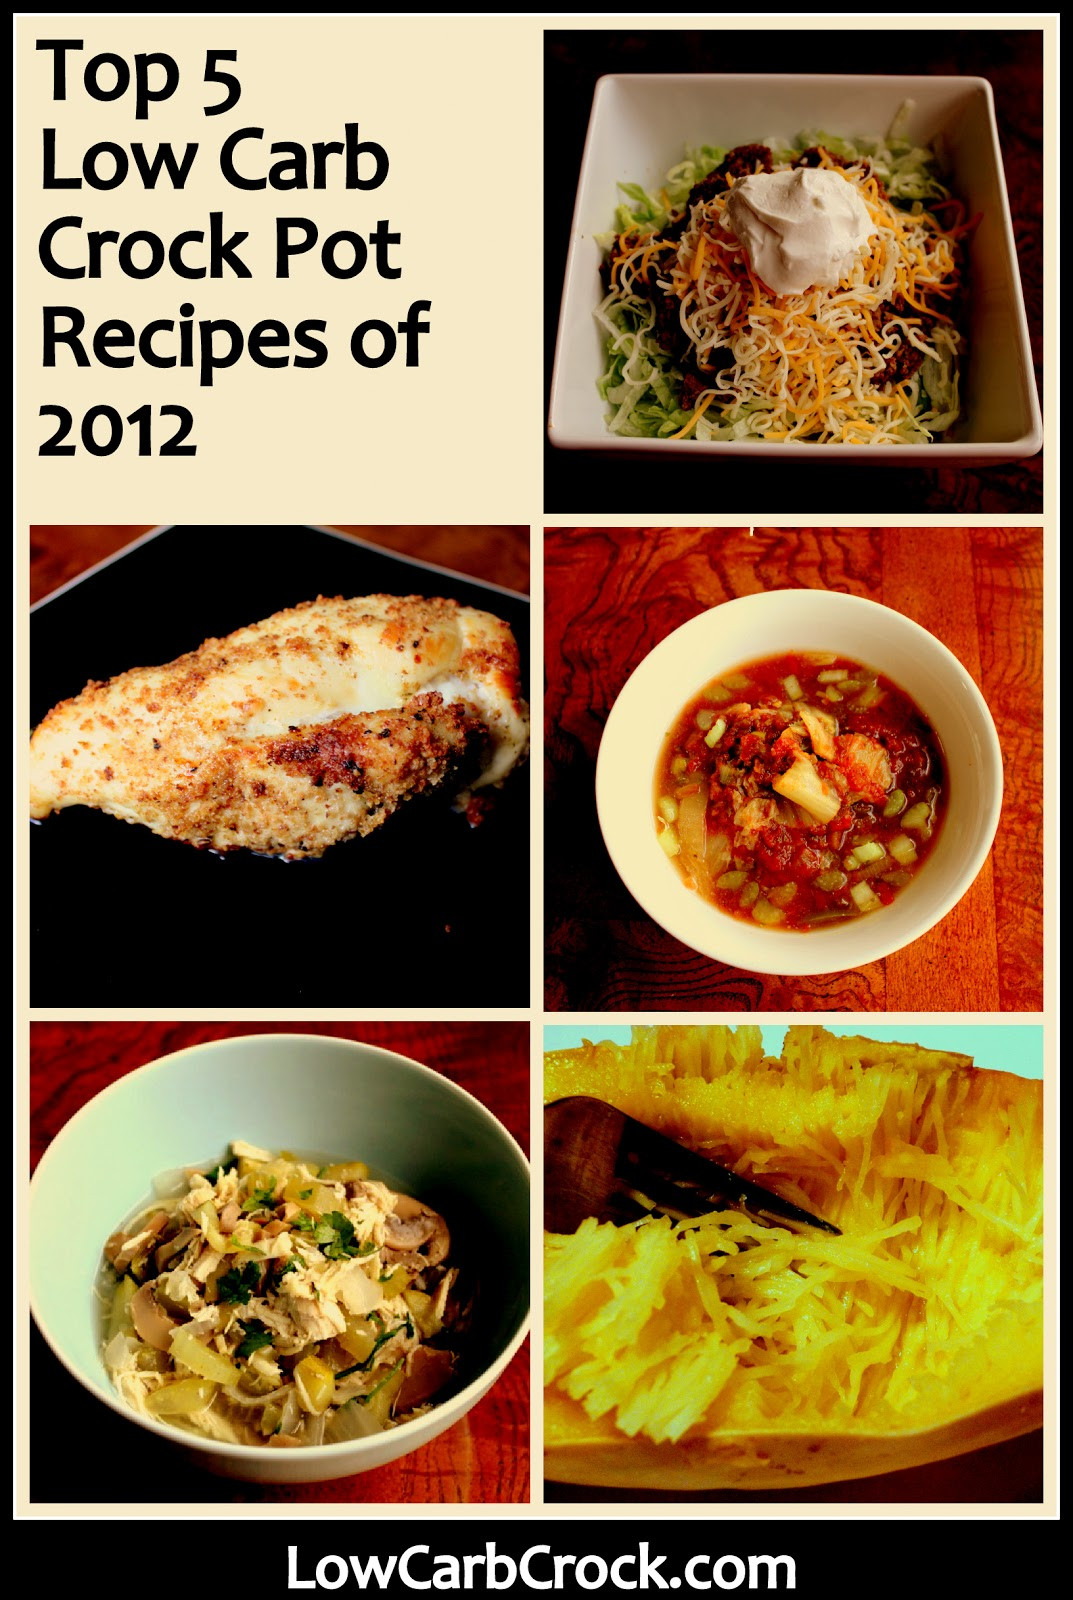 Low Carb Crock Pot Recipes
 Top 5 Low Carb Crock Pot Recipes of 2012